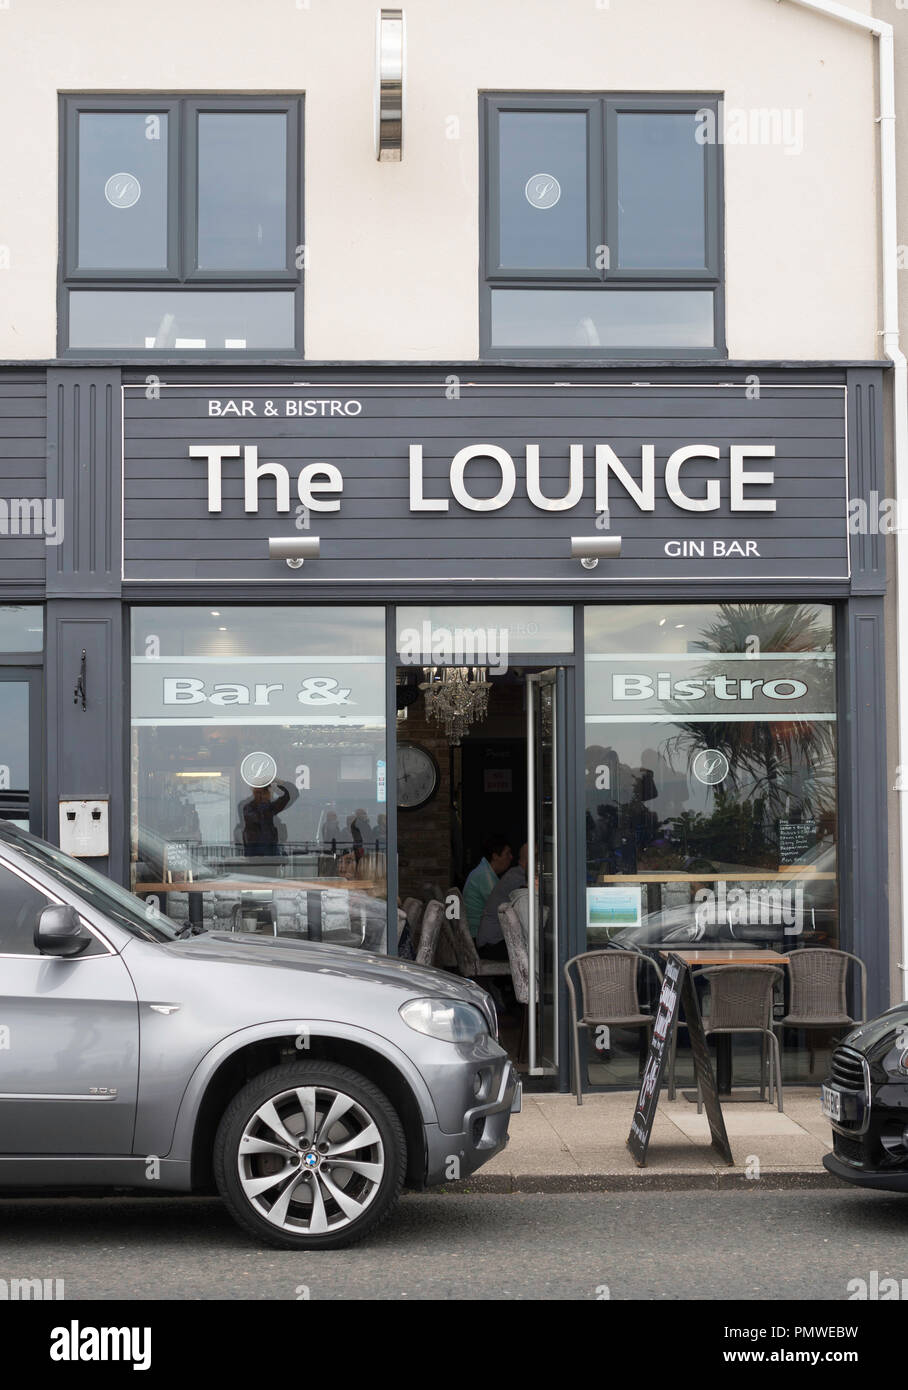 Il lounge, un lungomare gin bar e bistro, Seaham, Co. Durham, England, Regno Unito Foto Stock